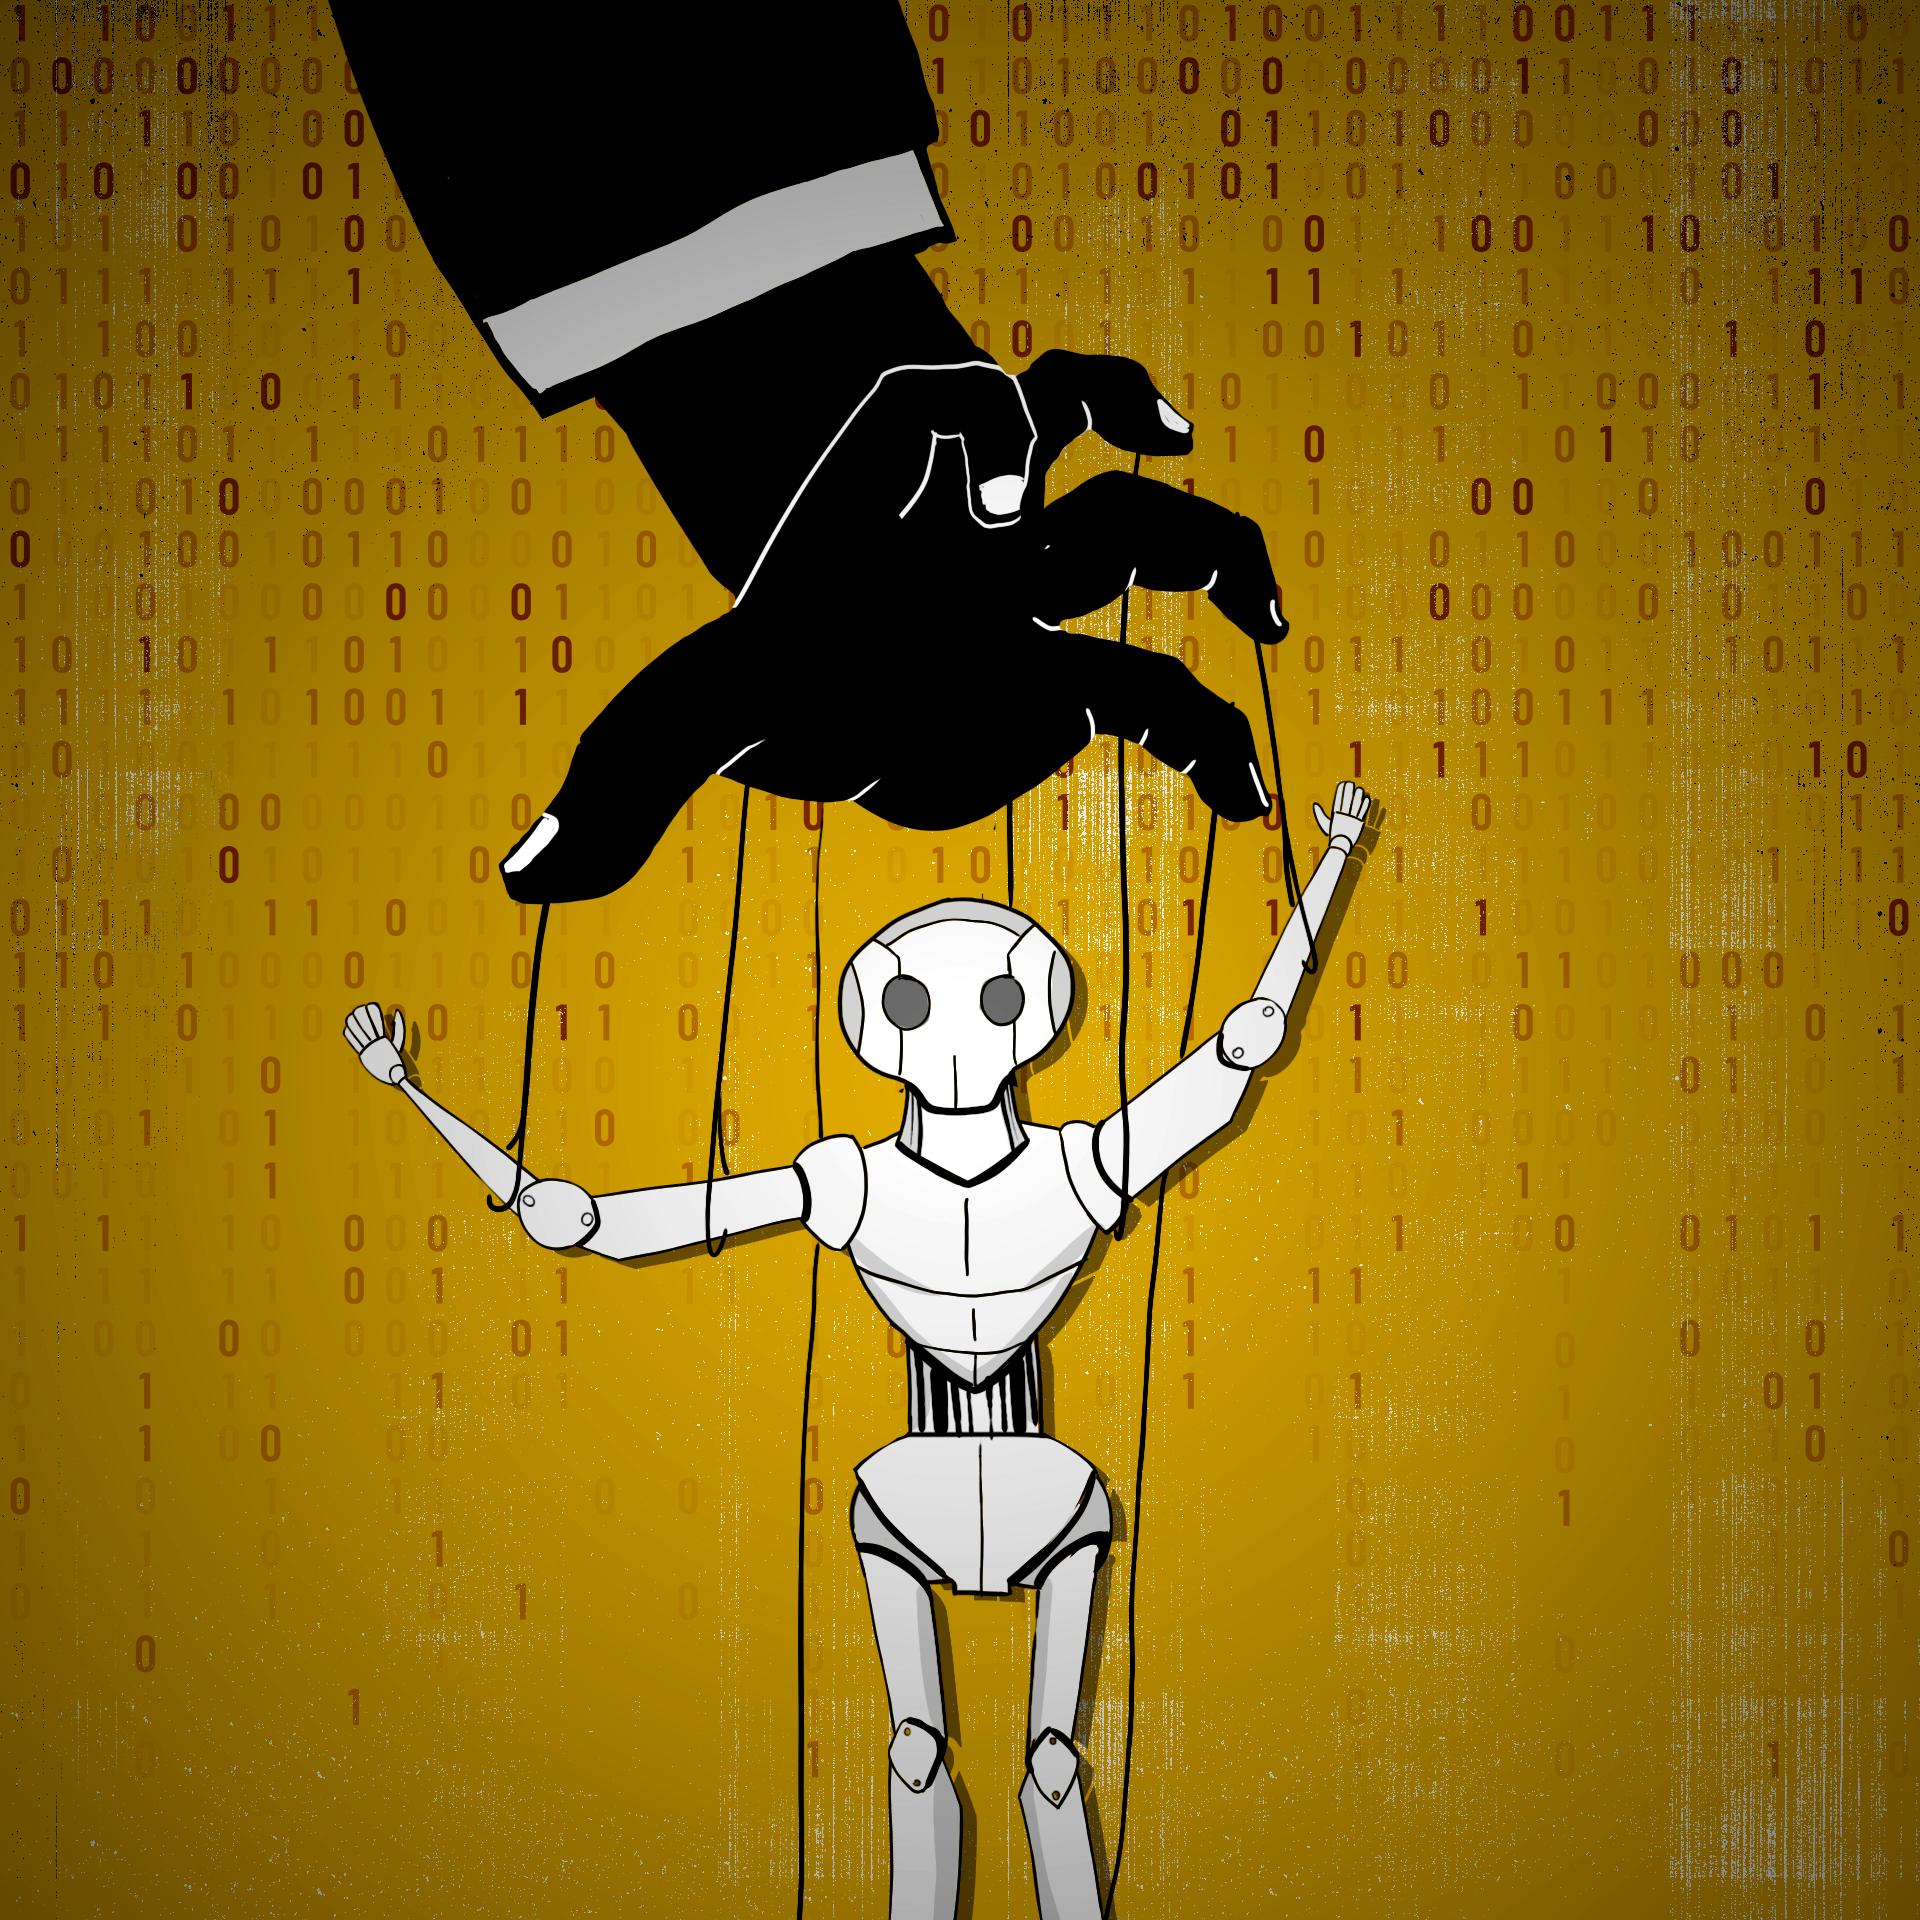 Humanoidalny robot trzymany jak kukiełka na sznurkach przez rękę w marynarce